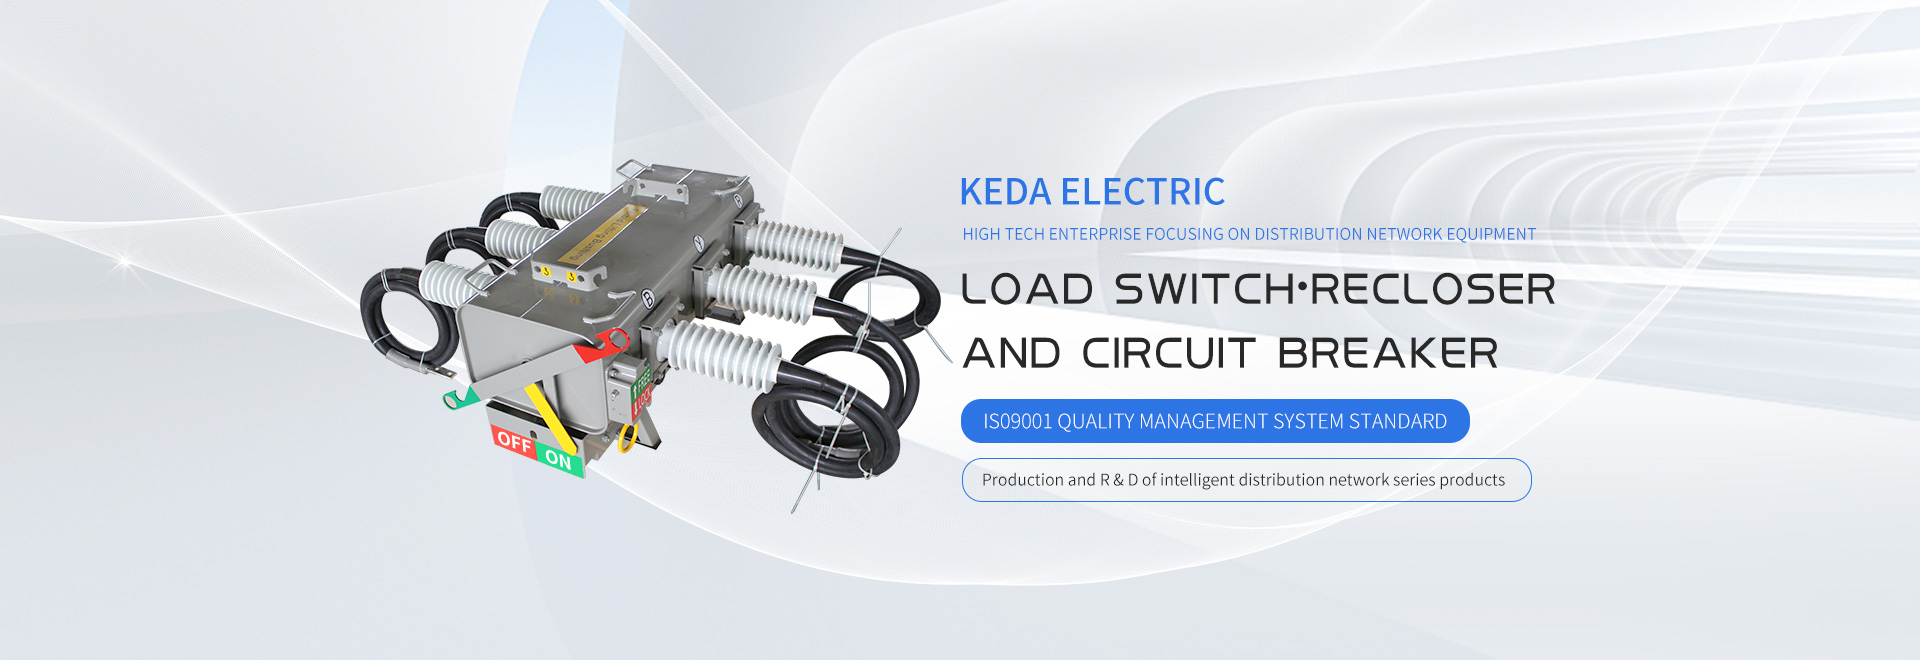 Henan Keda Electric Co., Ltd